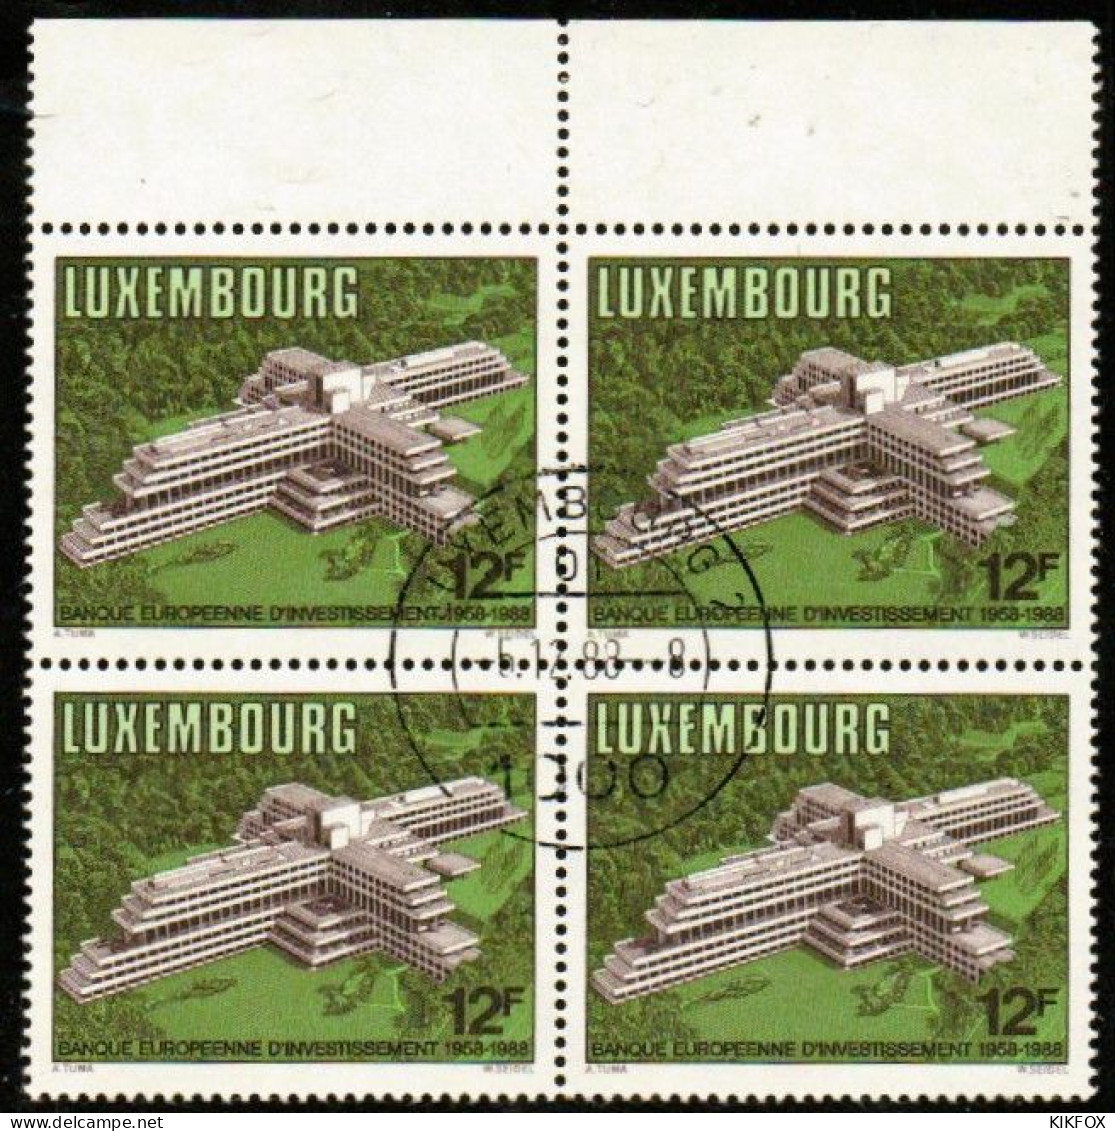 Luxembourg, Luxemburg,1988, MI 1208,YV 1158, VIERERBLOCK,30 JAHRE EUROPÄISCHE INVESTITIONSBANK (EIB),GESTEMPELT,OBLITERE - Gebruikt